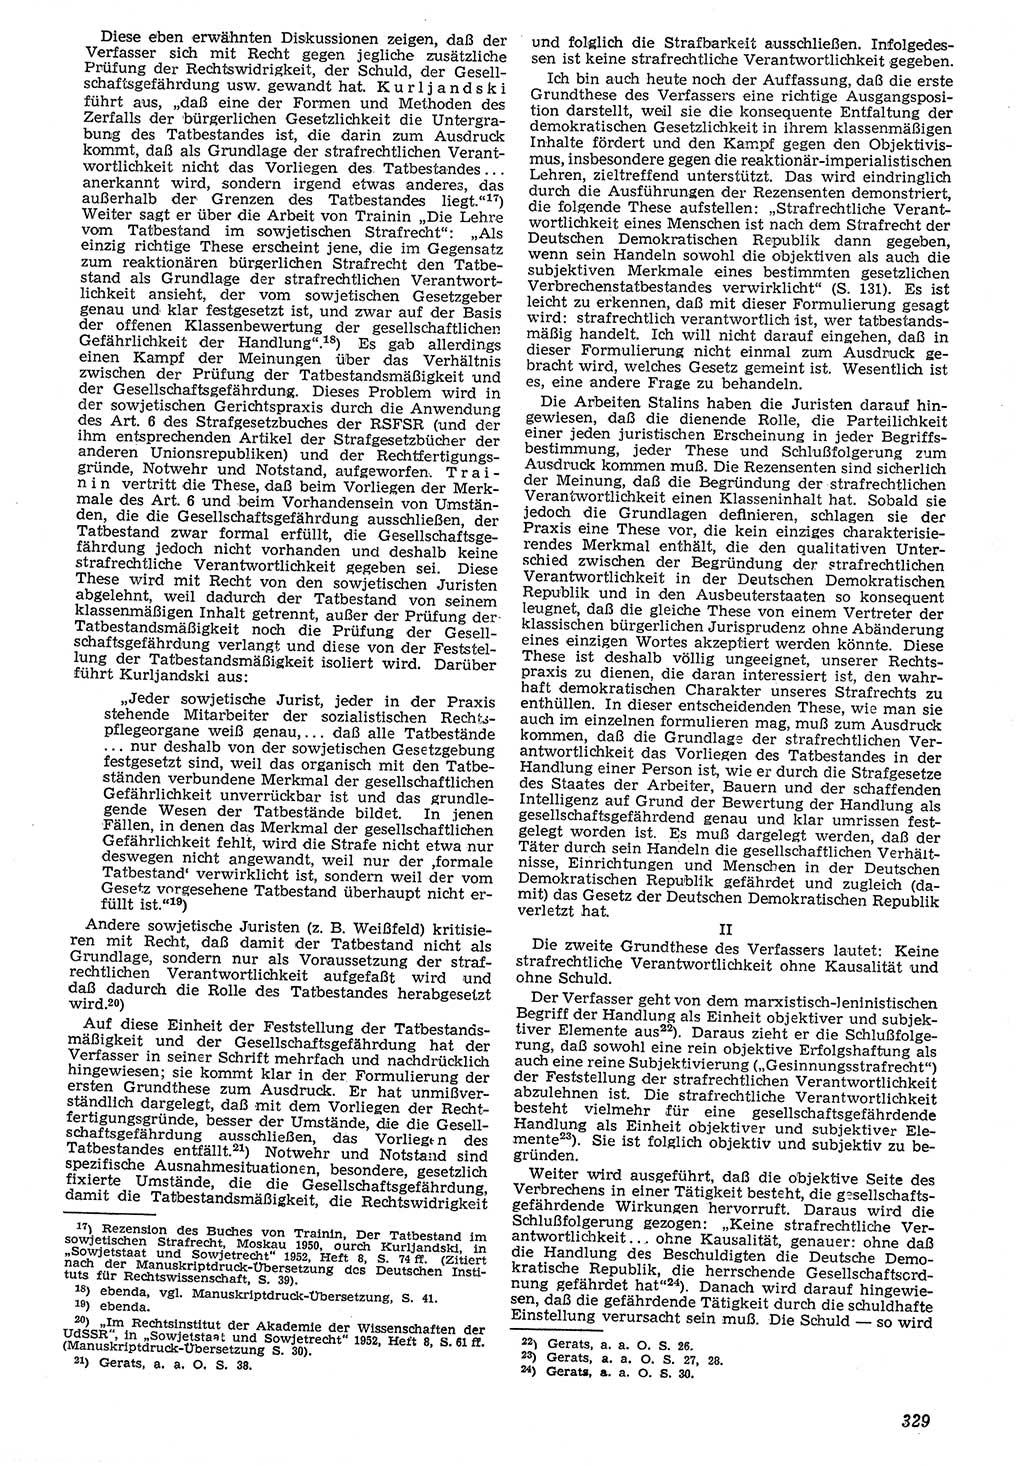 Neue Justiz (NJ), Zeitschrift für Recht und Rechtswissenschaft [Deutsche Demokratische Republik (DDR)], 7. Jahrgang 1953, Seite 329 (NJ DDR 1953, S. 329)